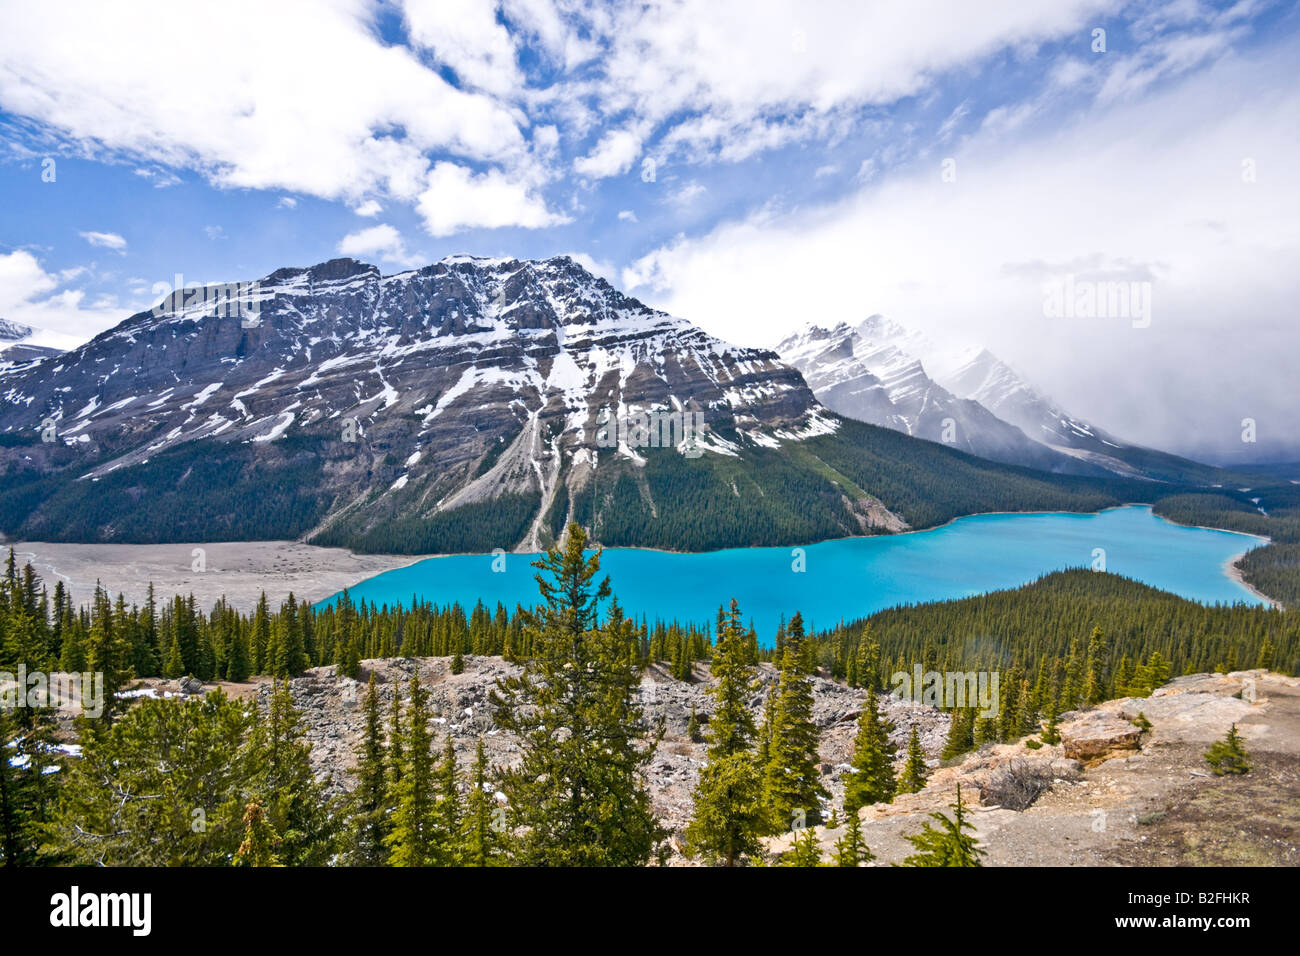 Le lac Peyto vu de sommet Bow, dans le parc national Banff Canada sur une date juin ensoleillée Banque D'Images